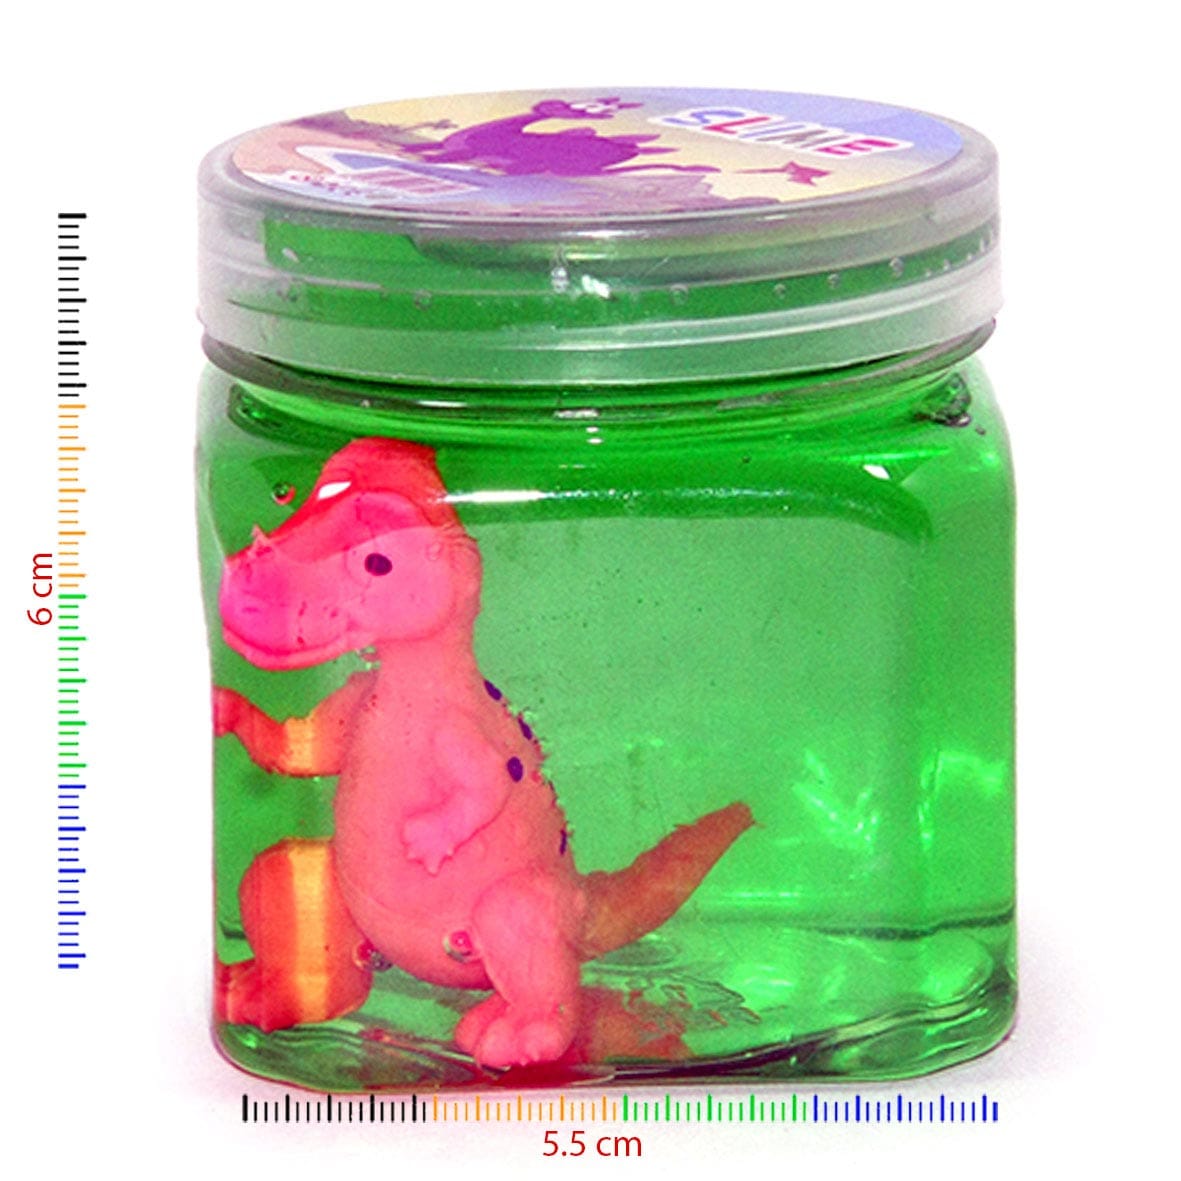 Slime con figura de dinosaurio